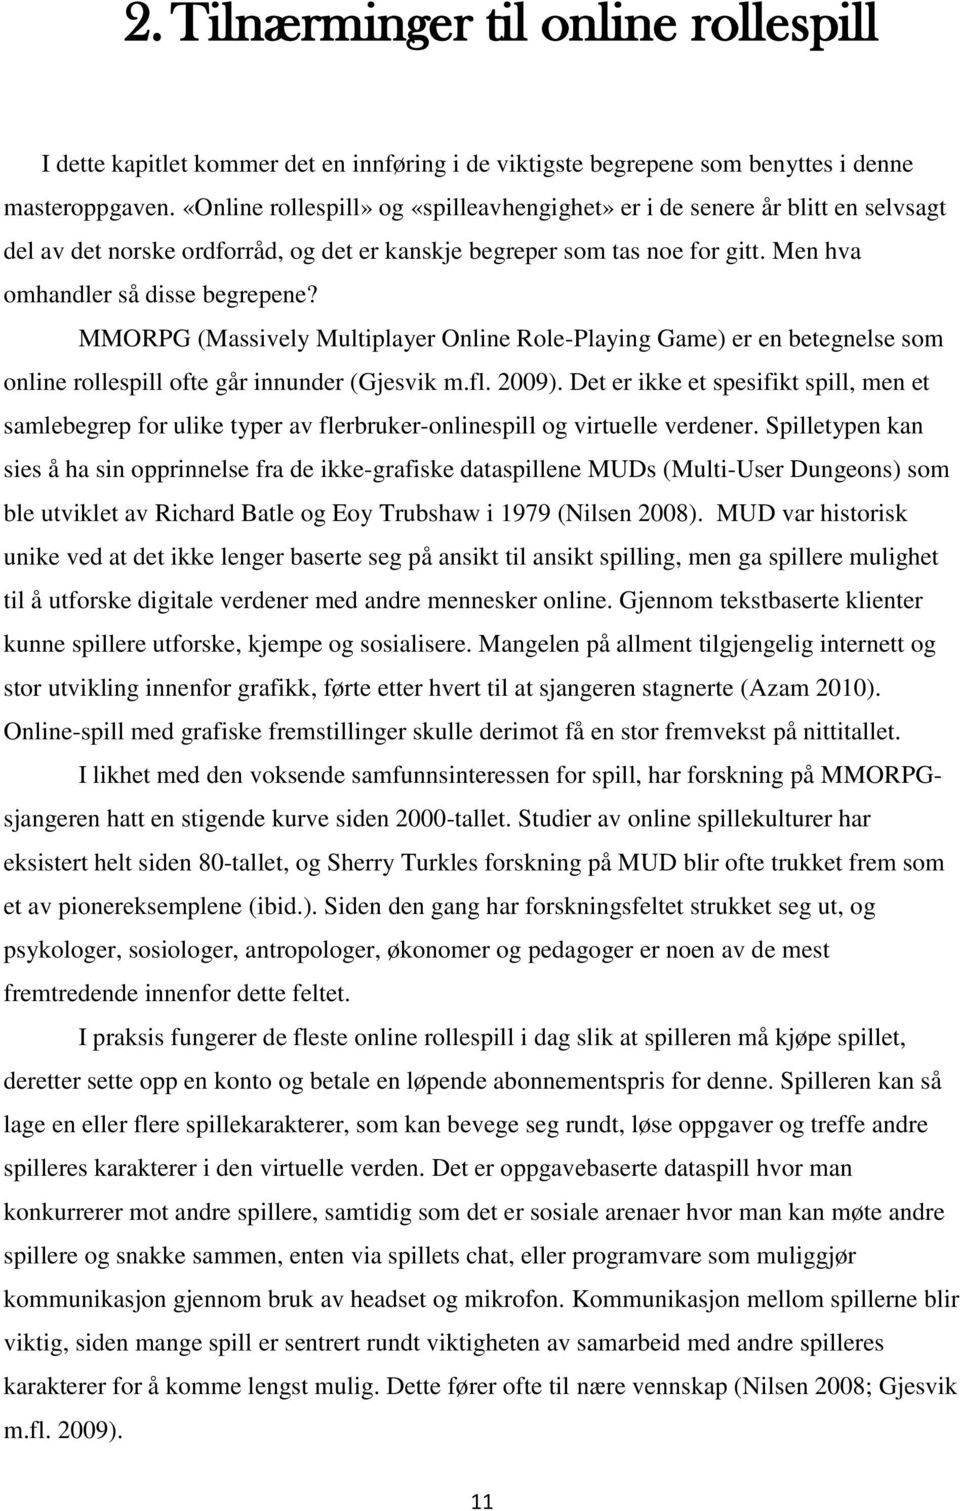 MMORPG (Massively Multiplayer Online Role-Playing Game) er en betegnelse som online rollespill ofte går innunder (Gjesvik m.fl. 2009).